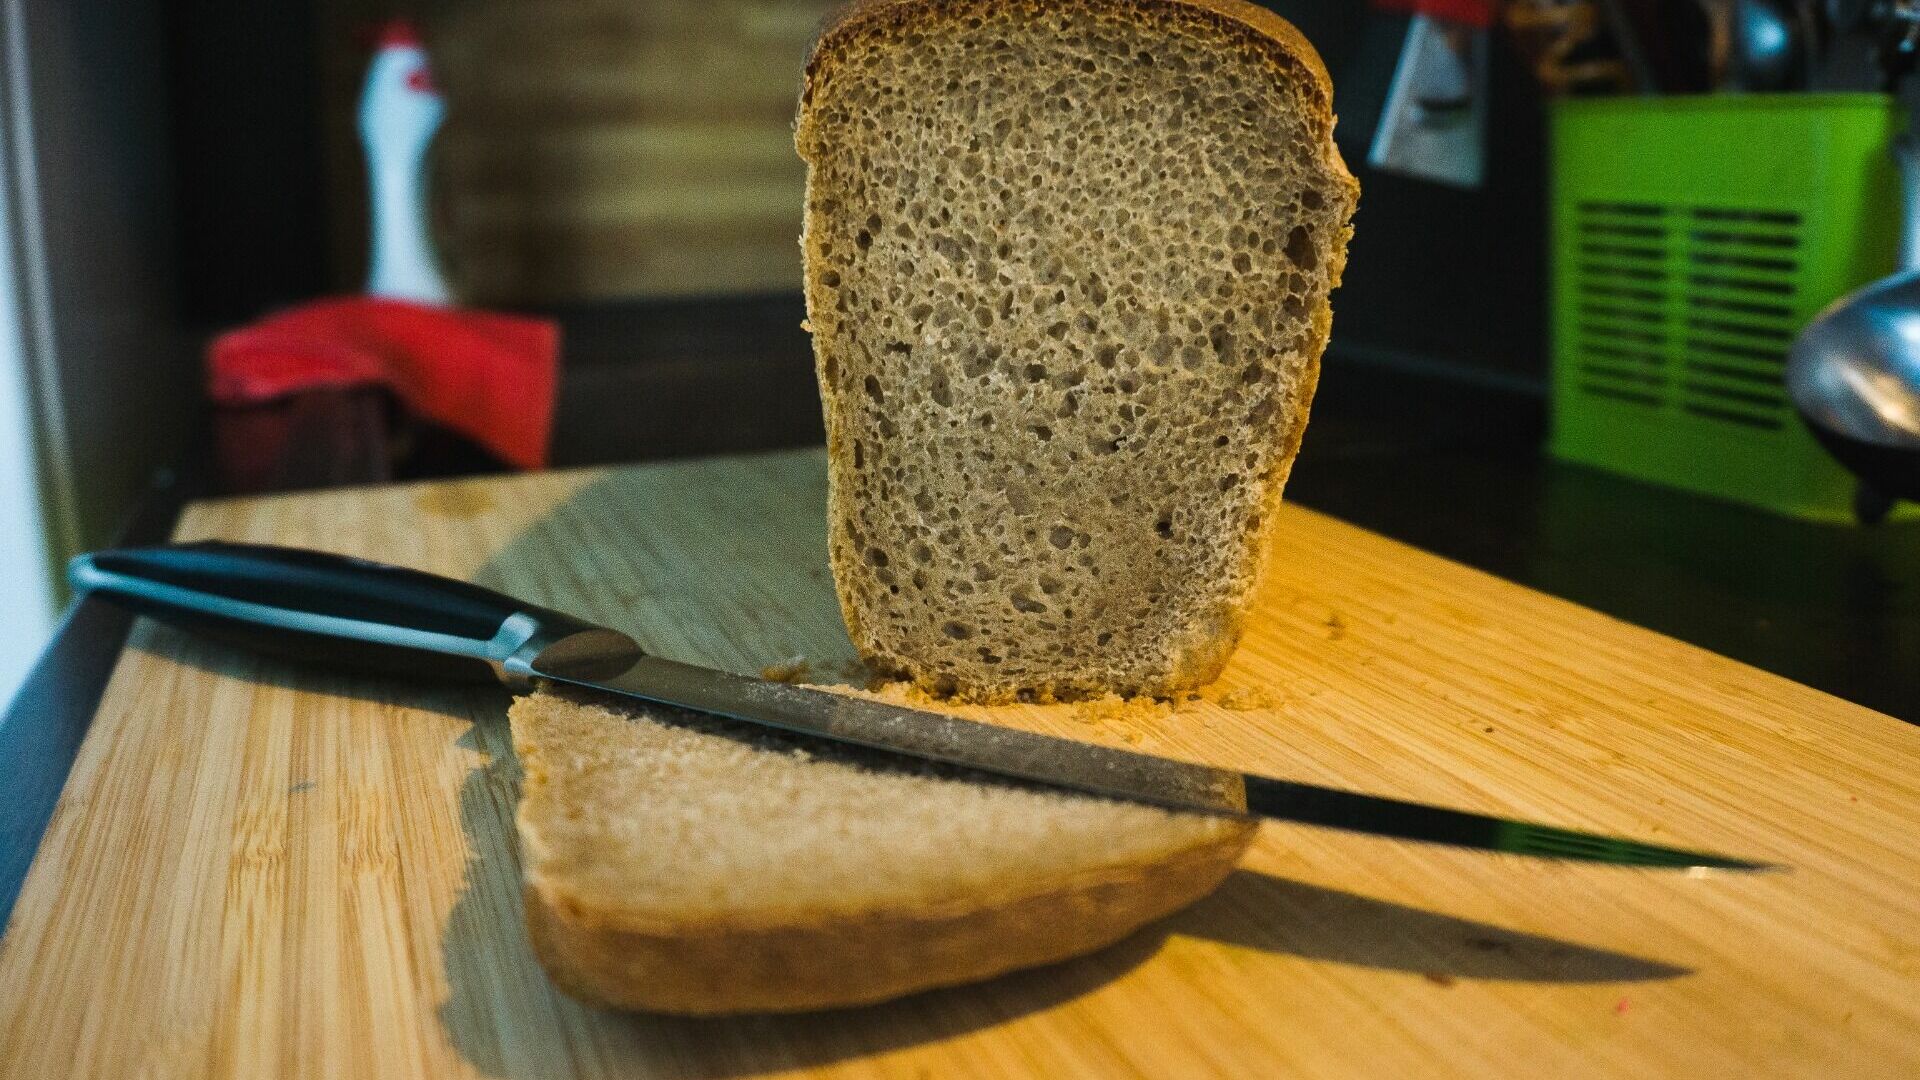 О том, что нужно беречь хлеб, напомнили жителям Хабаровского края